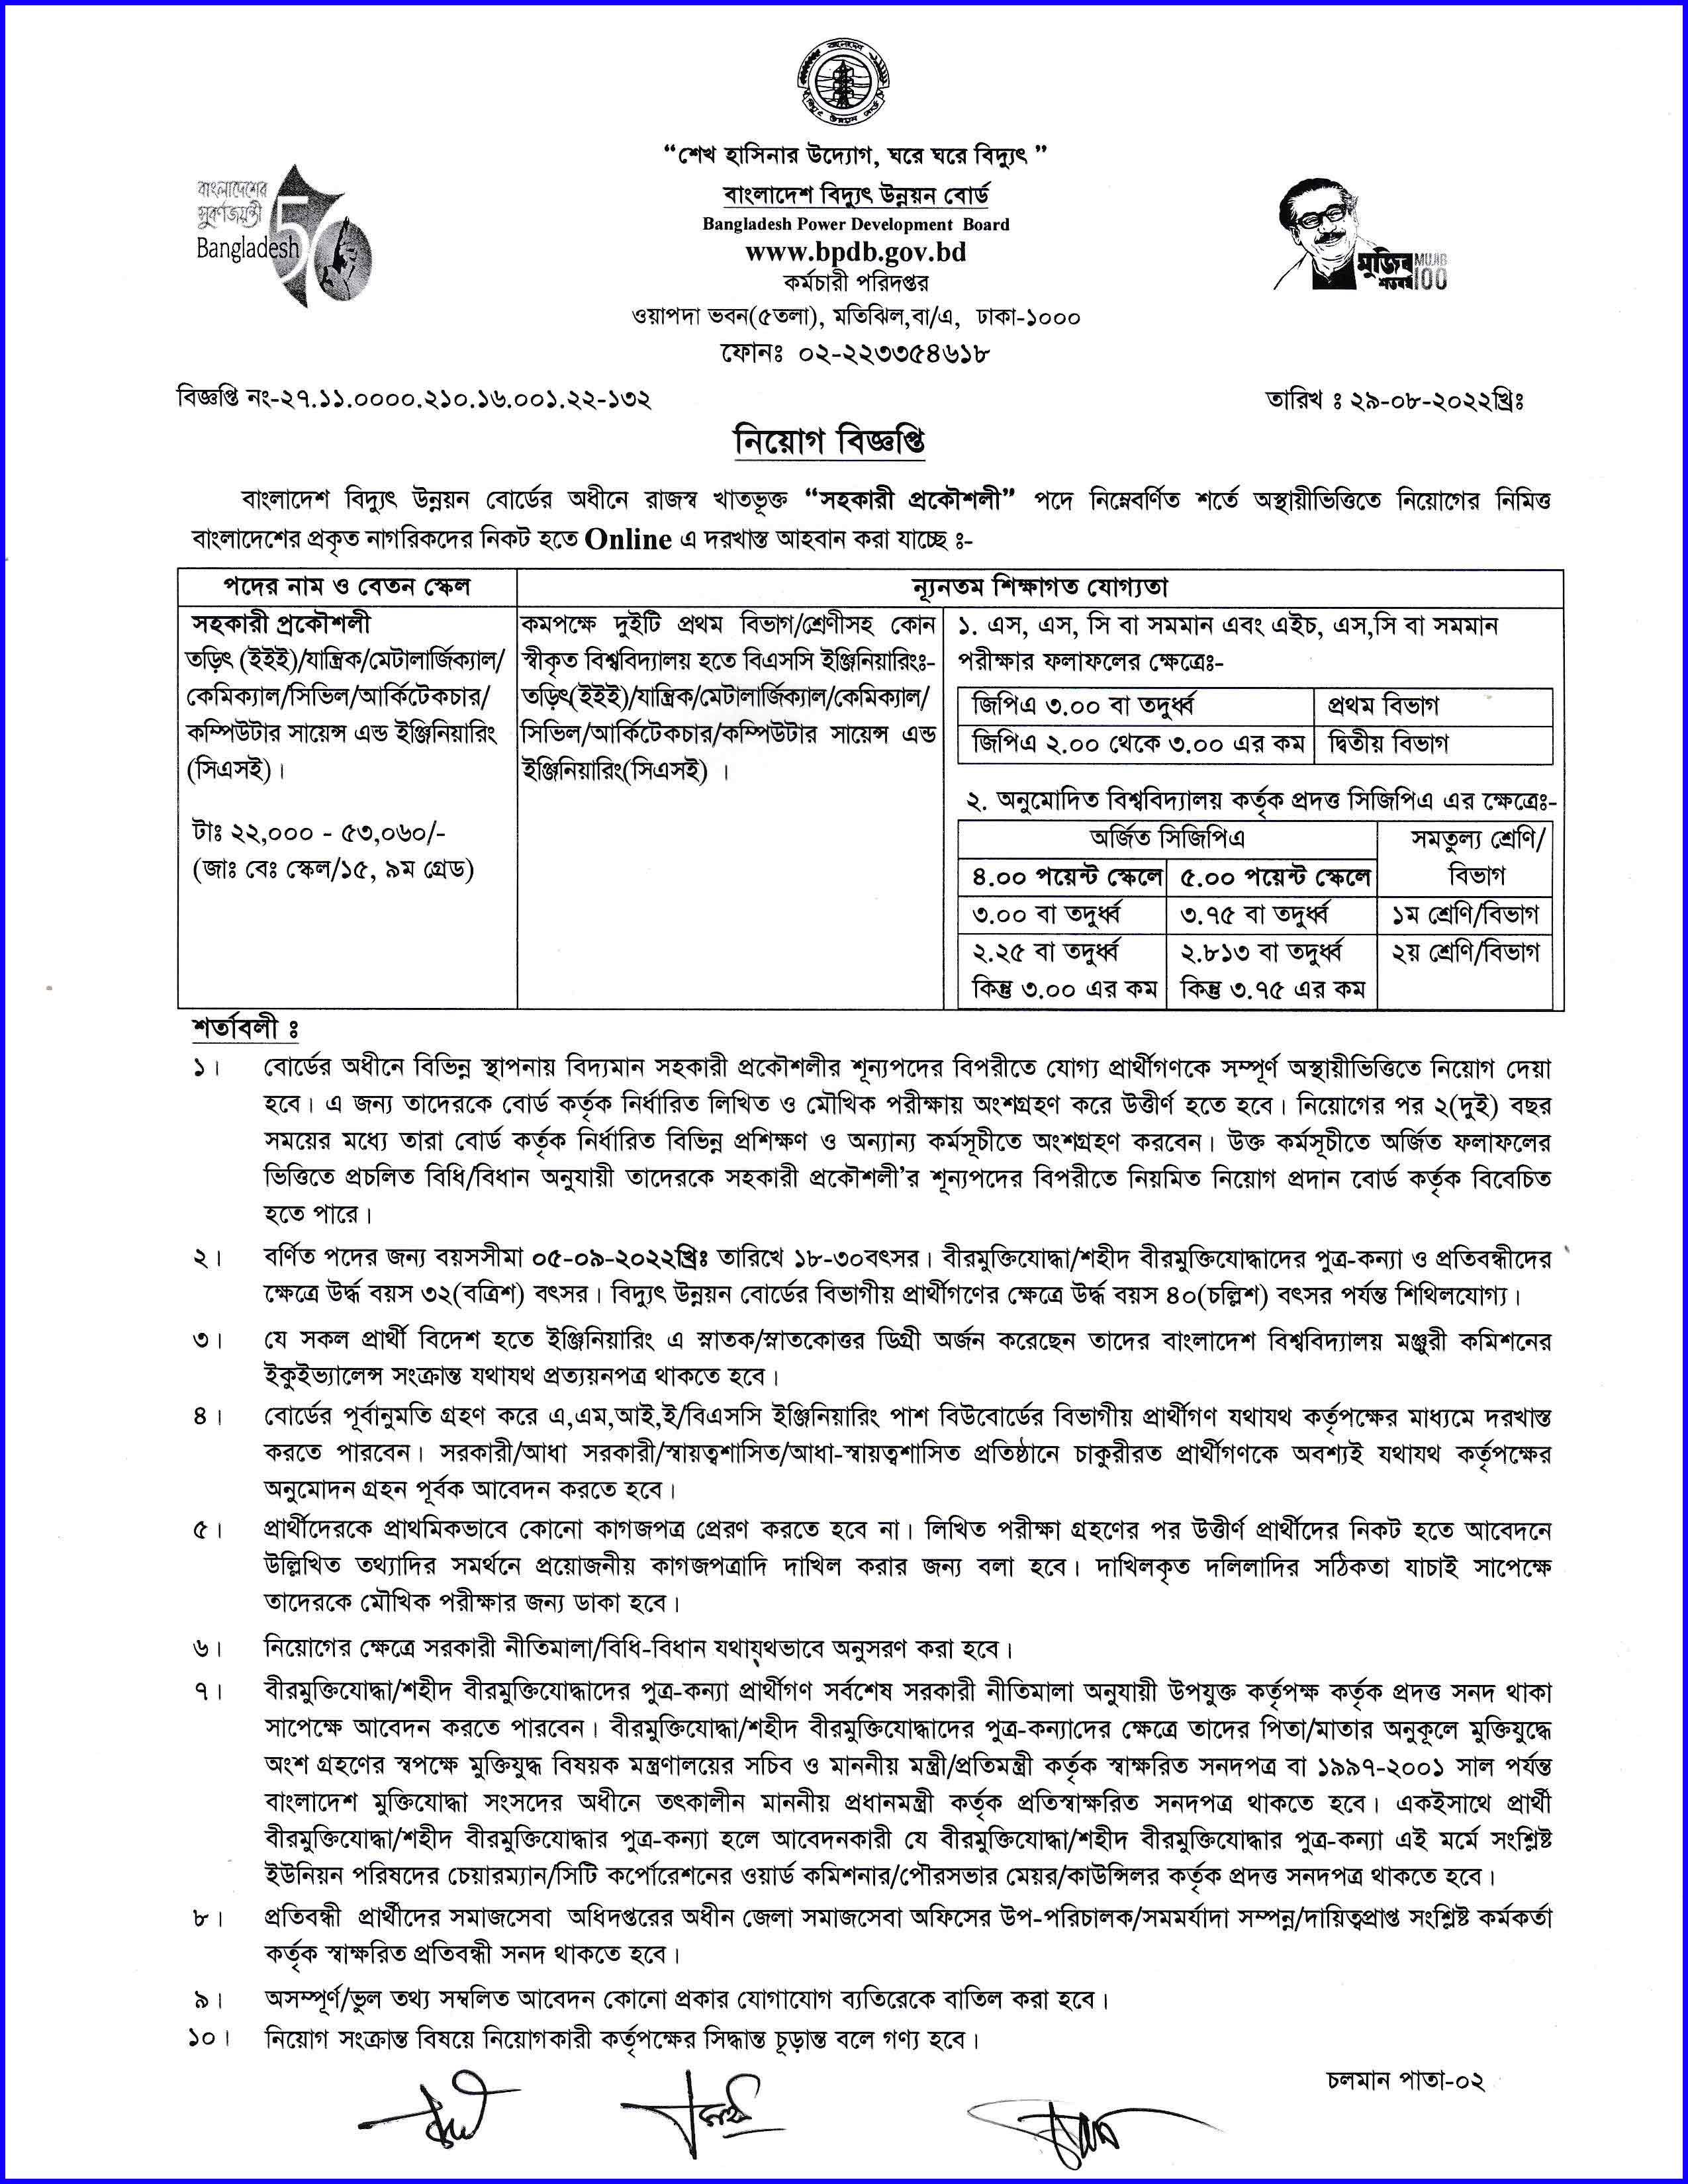 বাংলাদেশ বিদ্যুৎ উন্নয়ন বোর্ড এ আর্কষনীয় বেতনে নতুন চাকরি ২০২২ । Bangladesh Power Development Board (BPDP) new Job circular 2022.